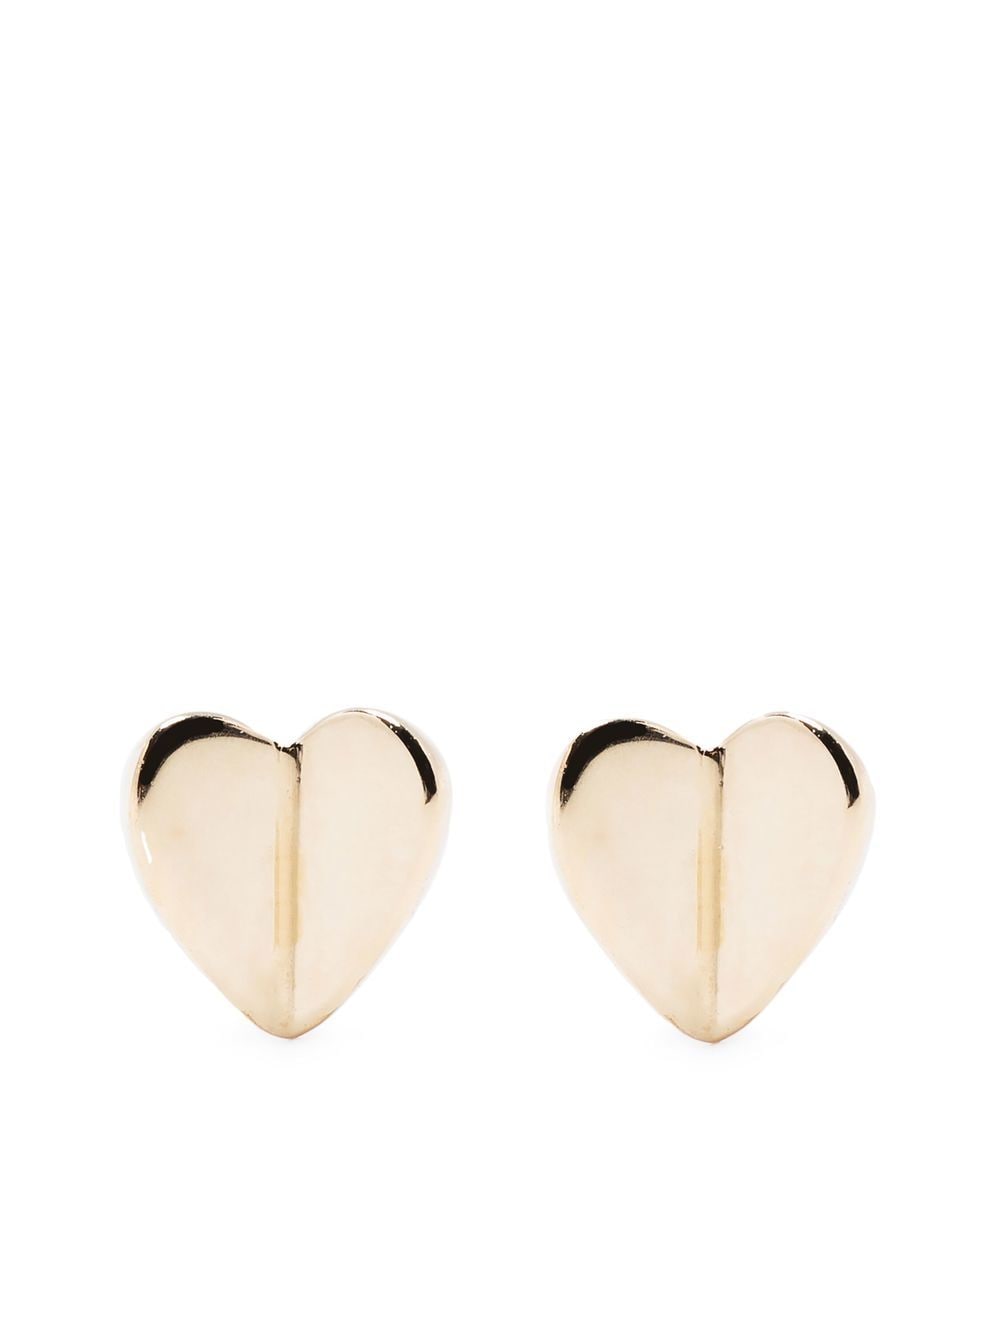 10kt yellow gold Folded Hearts stud earrings